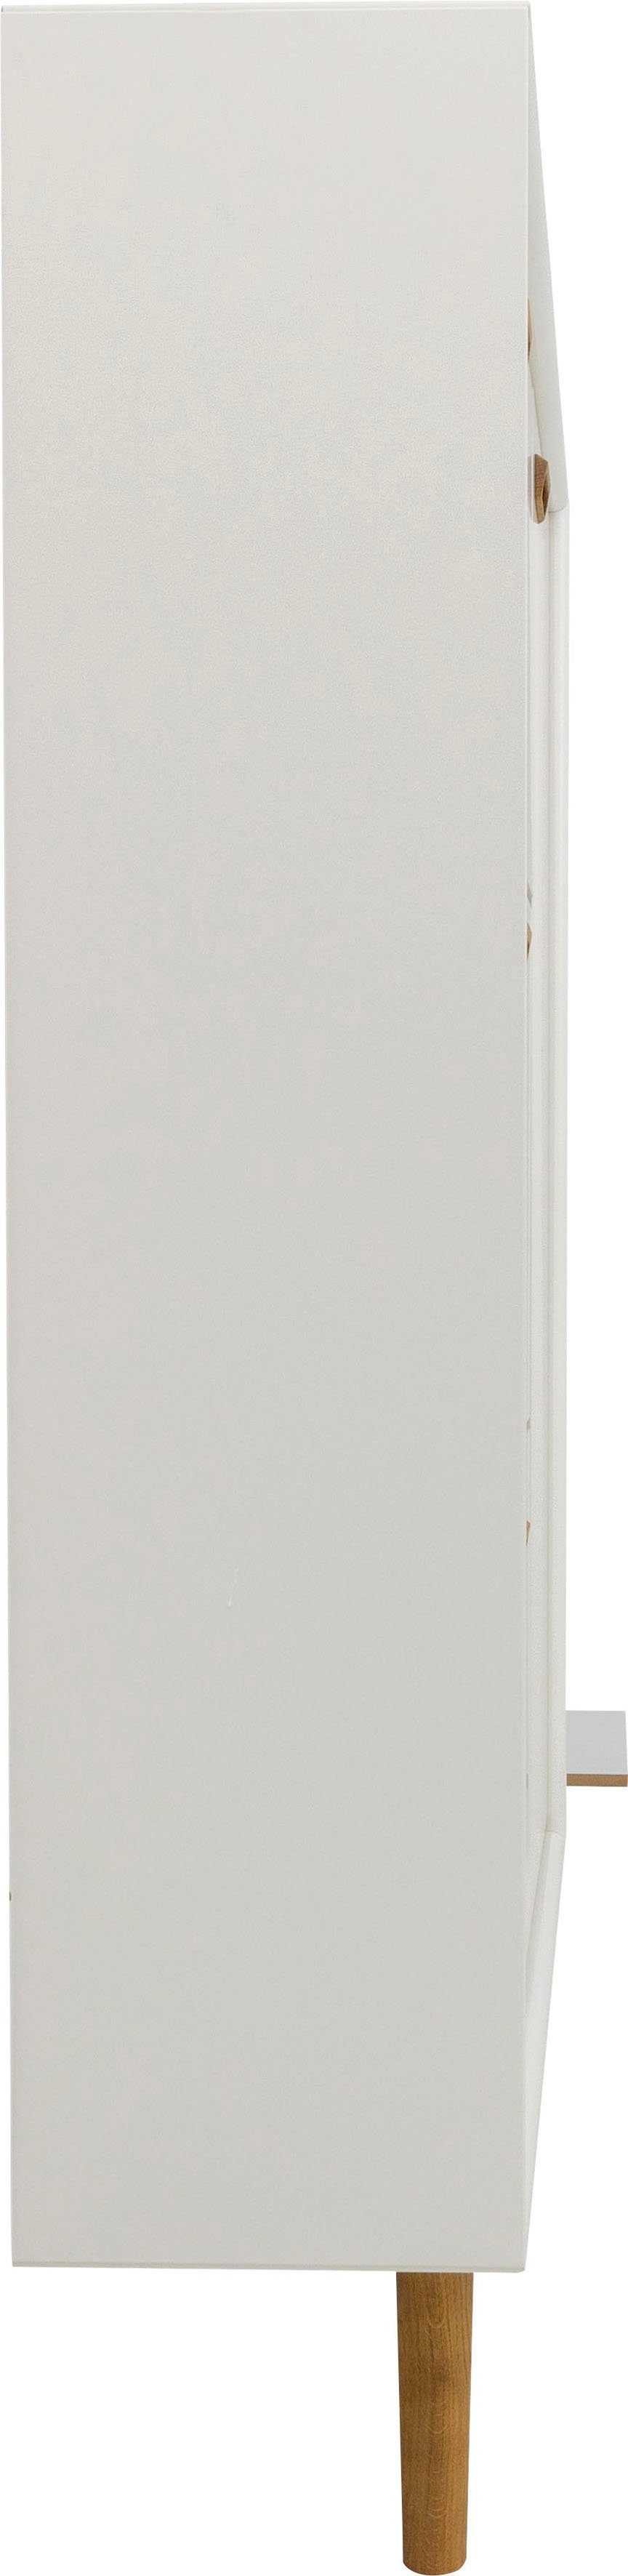 Tenzo von studio 3 Klappen, Tenzo SVEA mit Tür 1 Design white Schuhschrank und Design